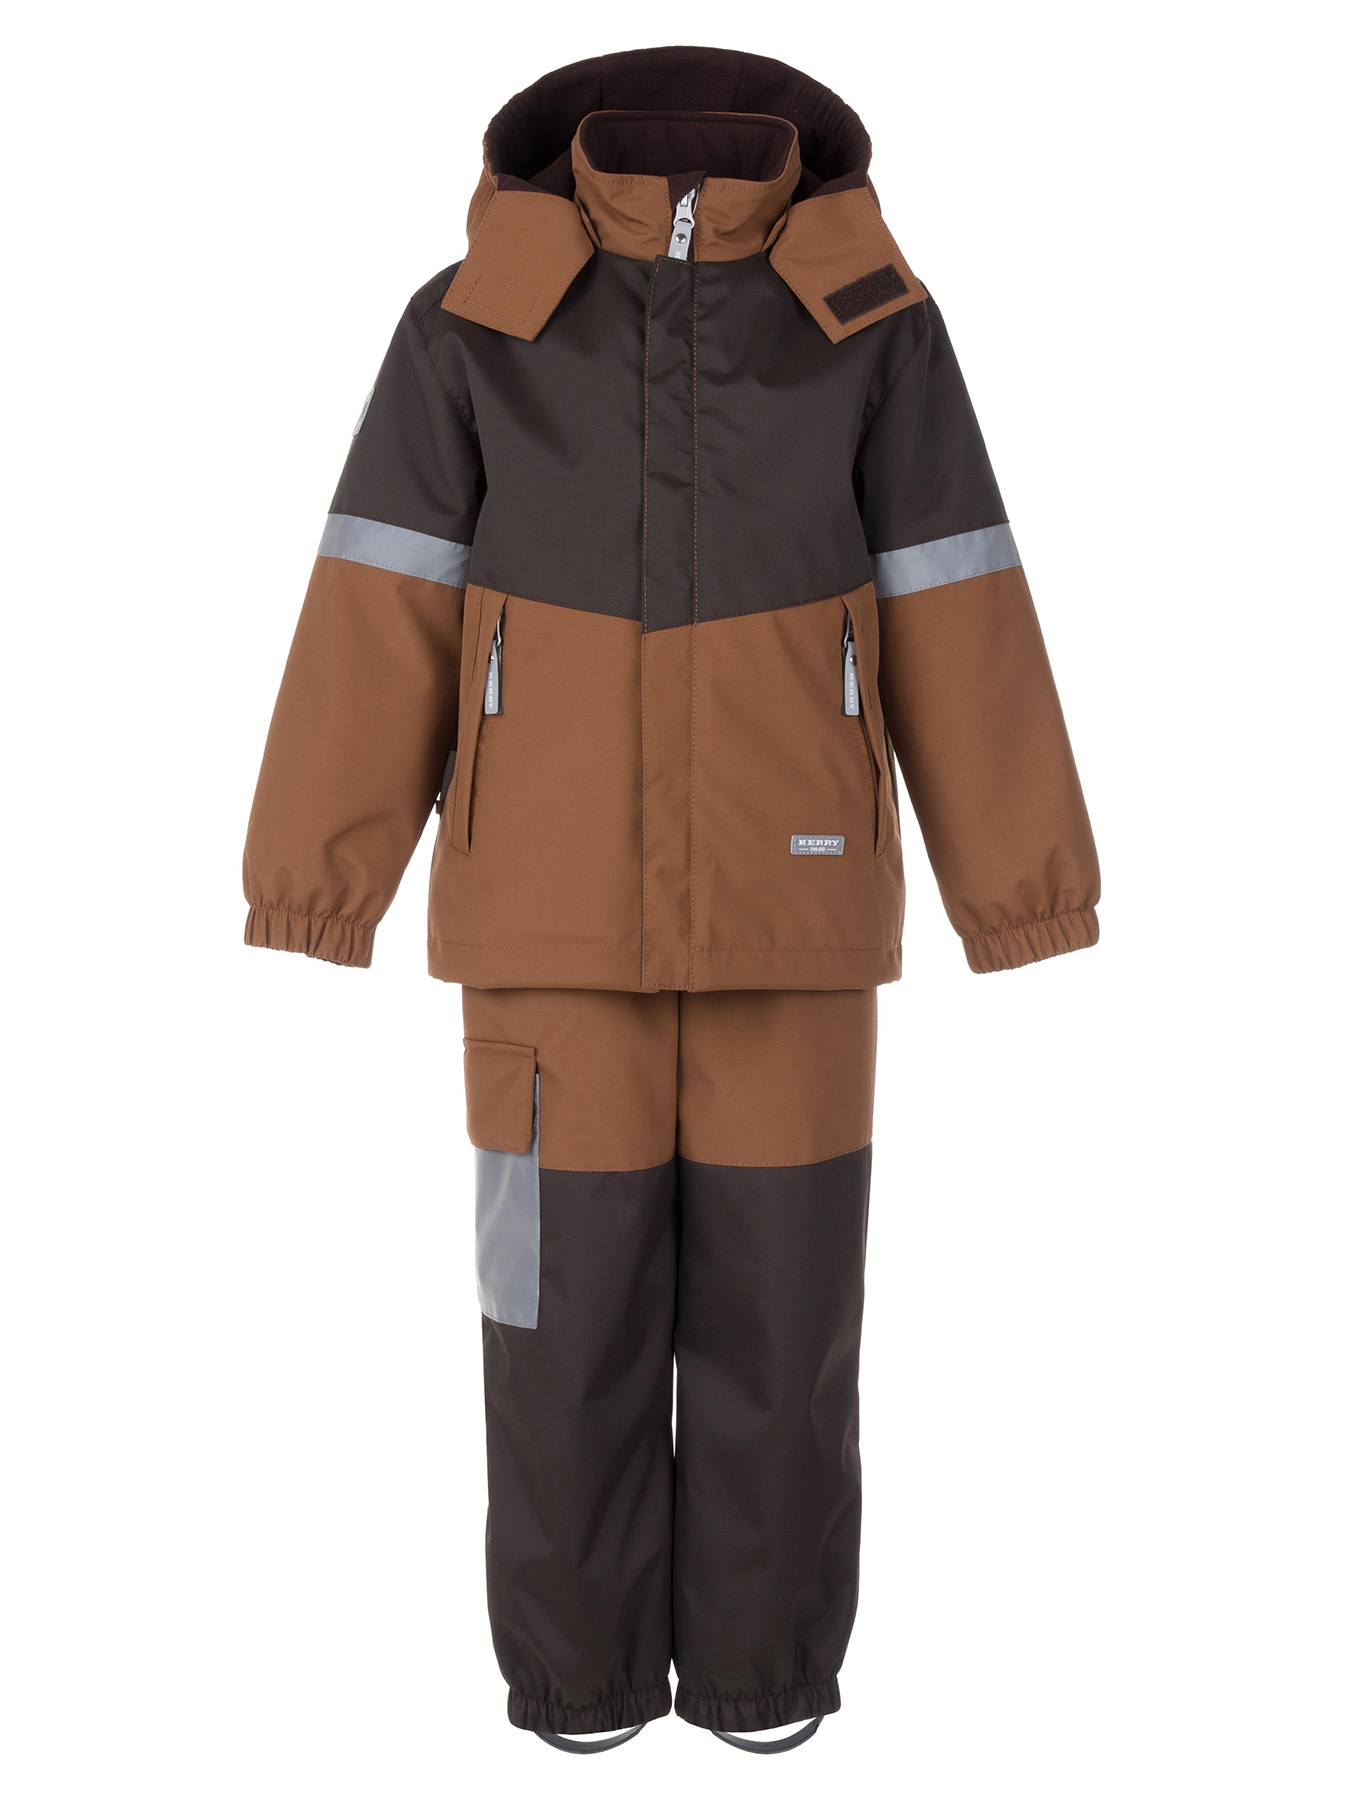 Комплект верхней одежды KERRY DRAKE K24036, 801-коричневый,темно-коричневый, 134